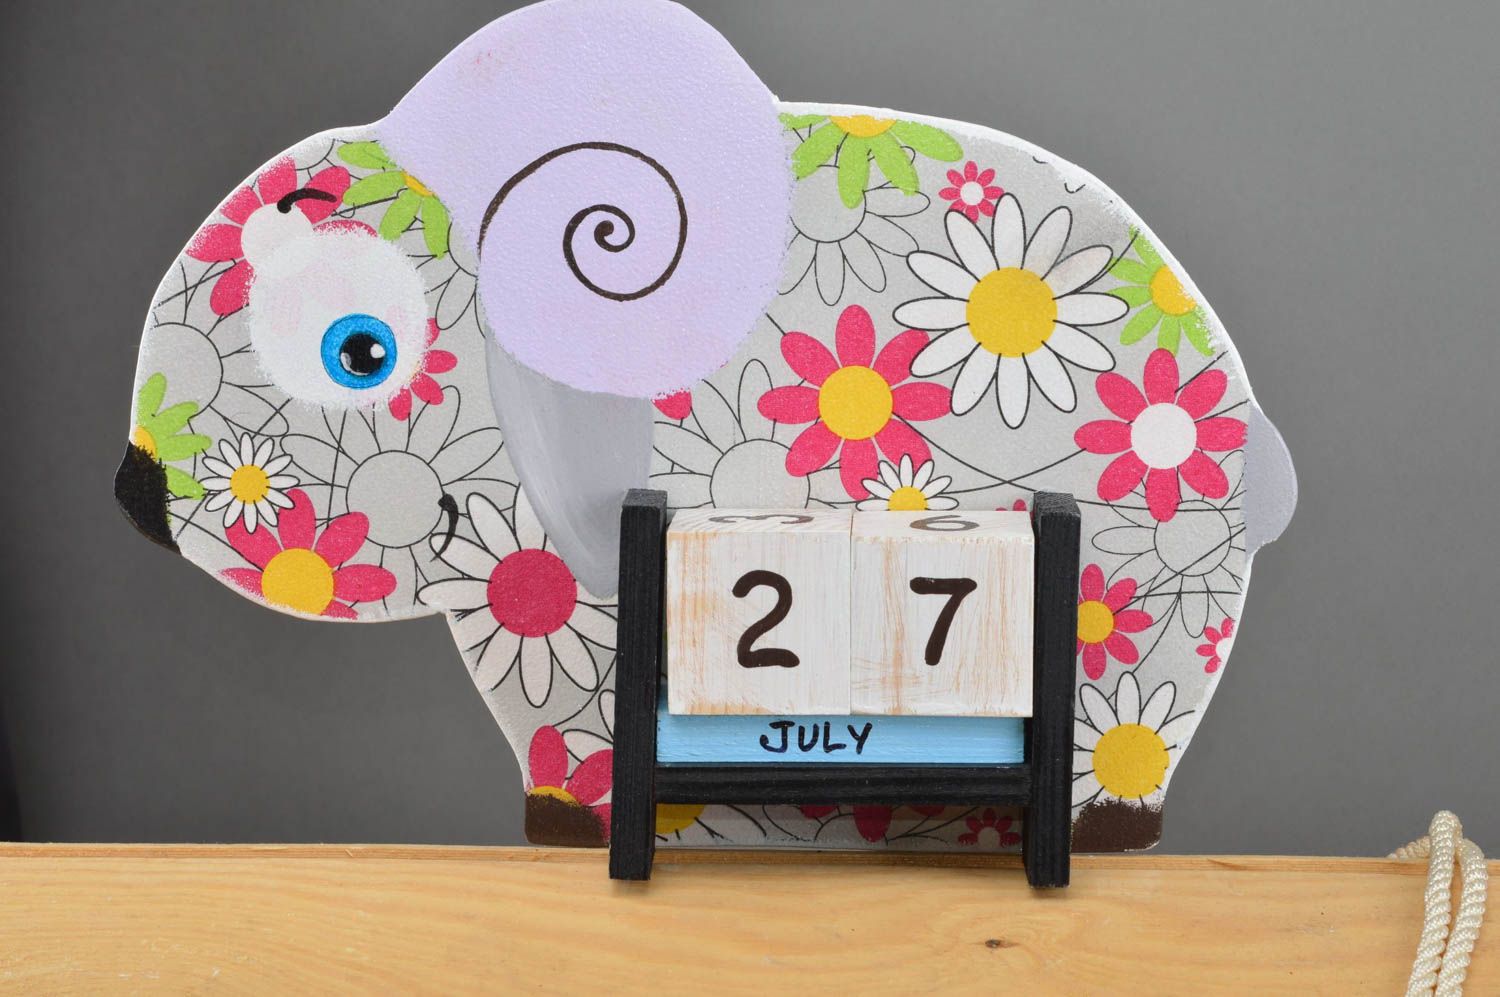 Детский календарь в виде барашка из фанеры декупаж в ромашках ручной работы фото 2